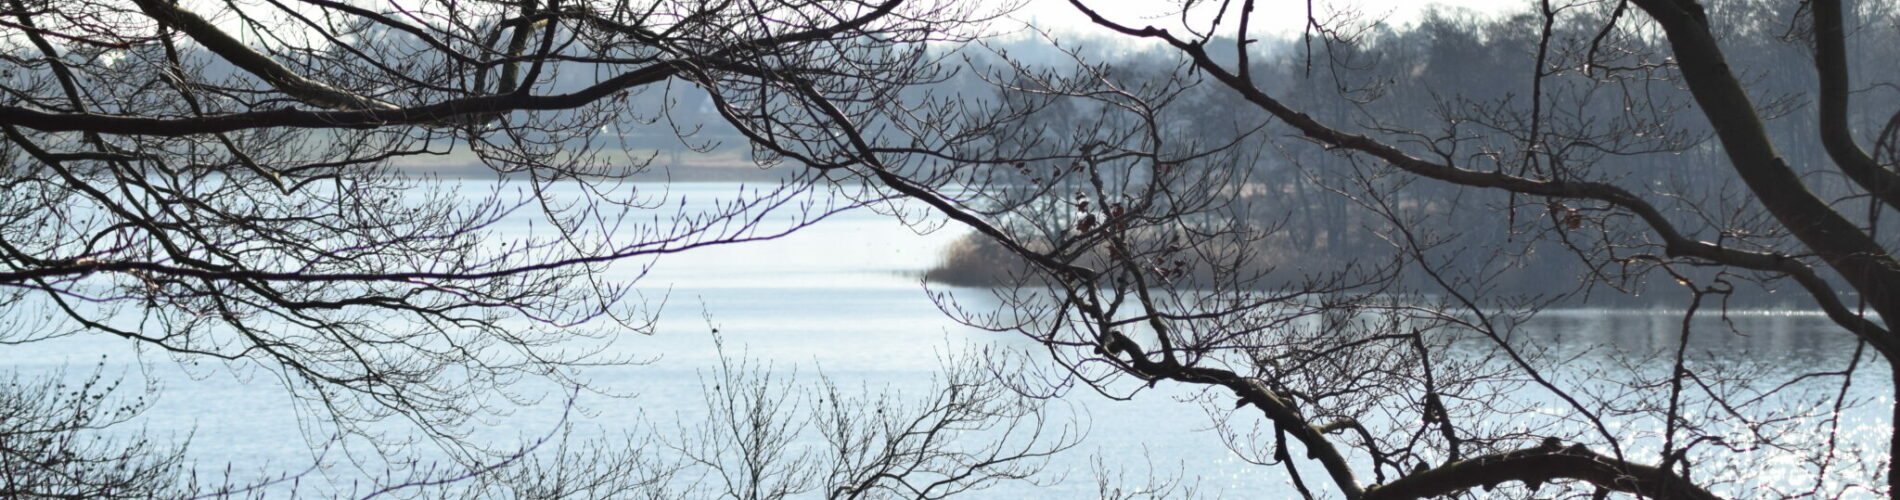 Udsigten over Bagsværd sø fra nordøst (Frederiksdal). Her er helt sikkert også smukt om vinteren. Naturen nær Bagsværd sø.